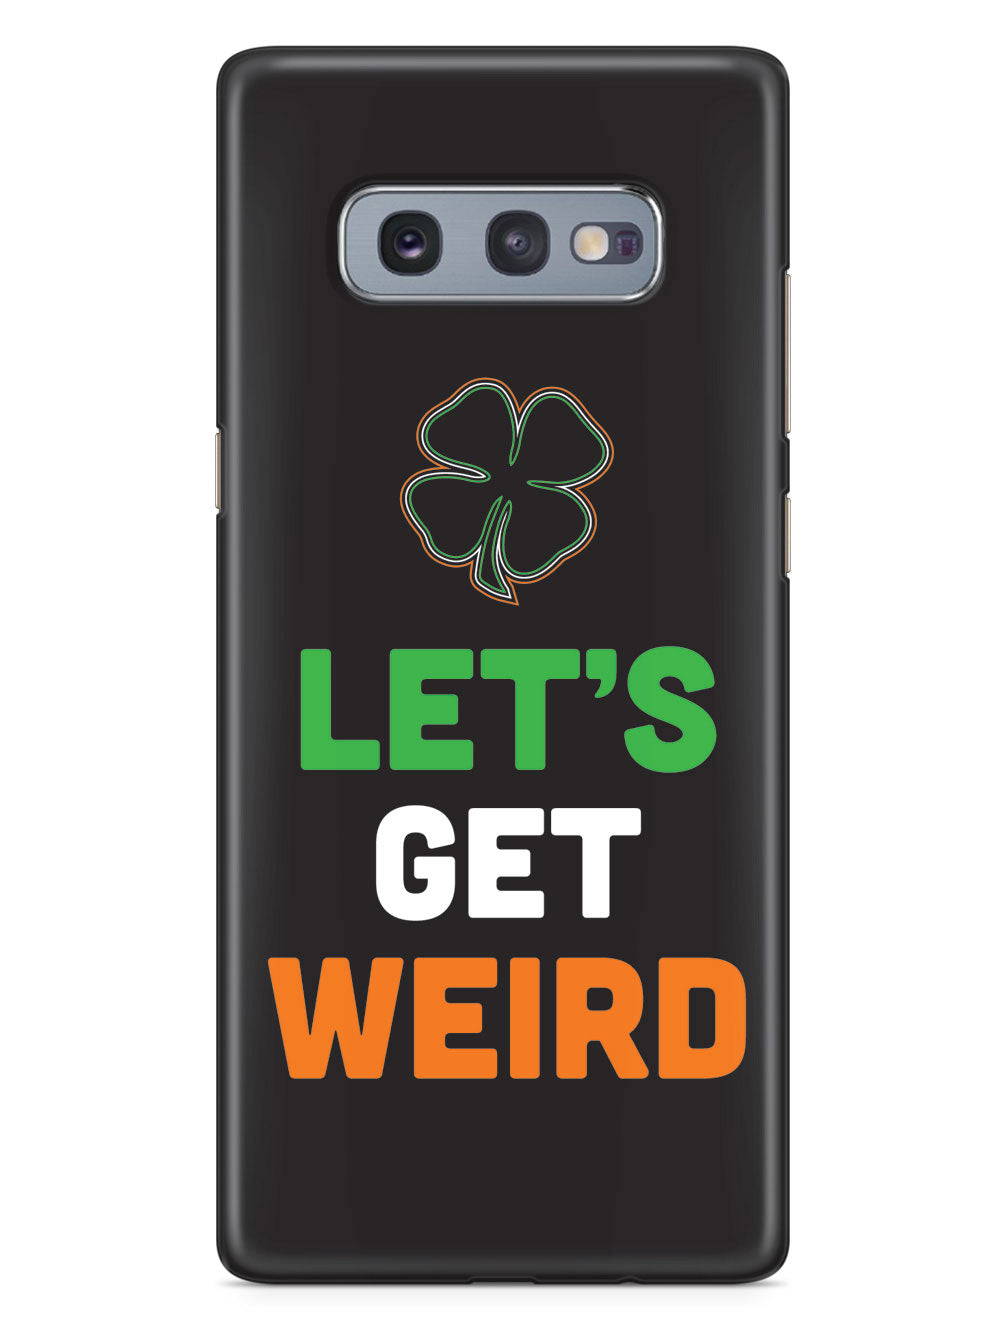 Let's Get Weird - St. Patrick's Day Irish Case